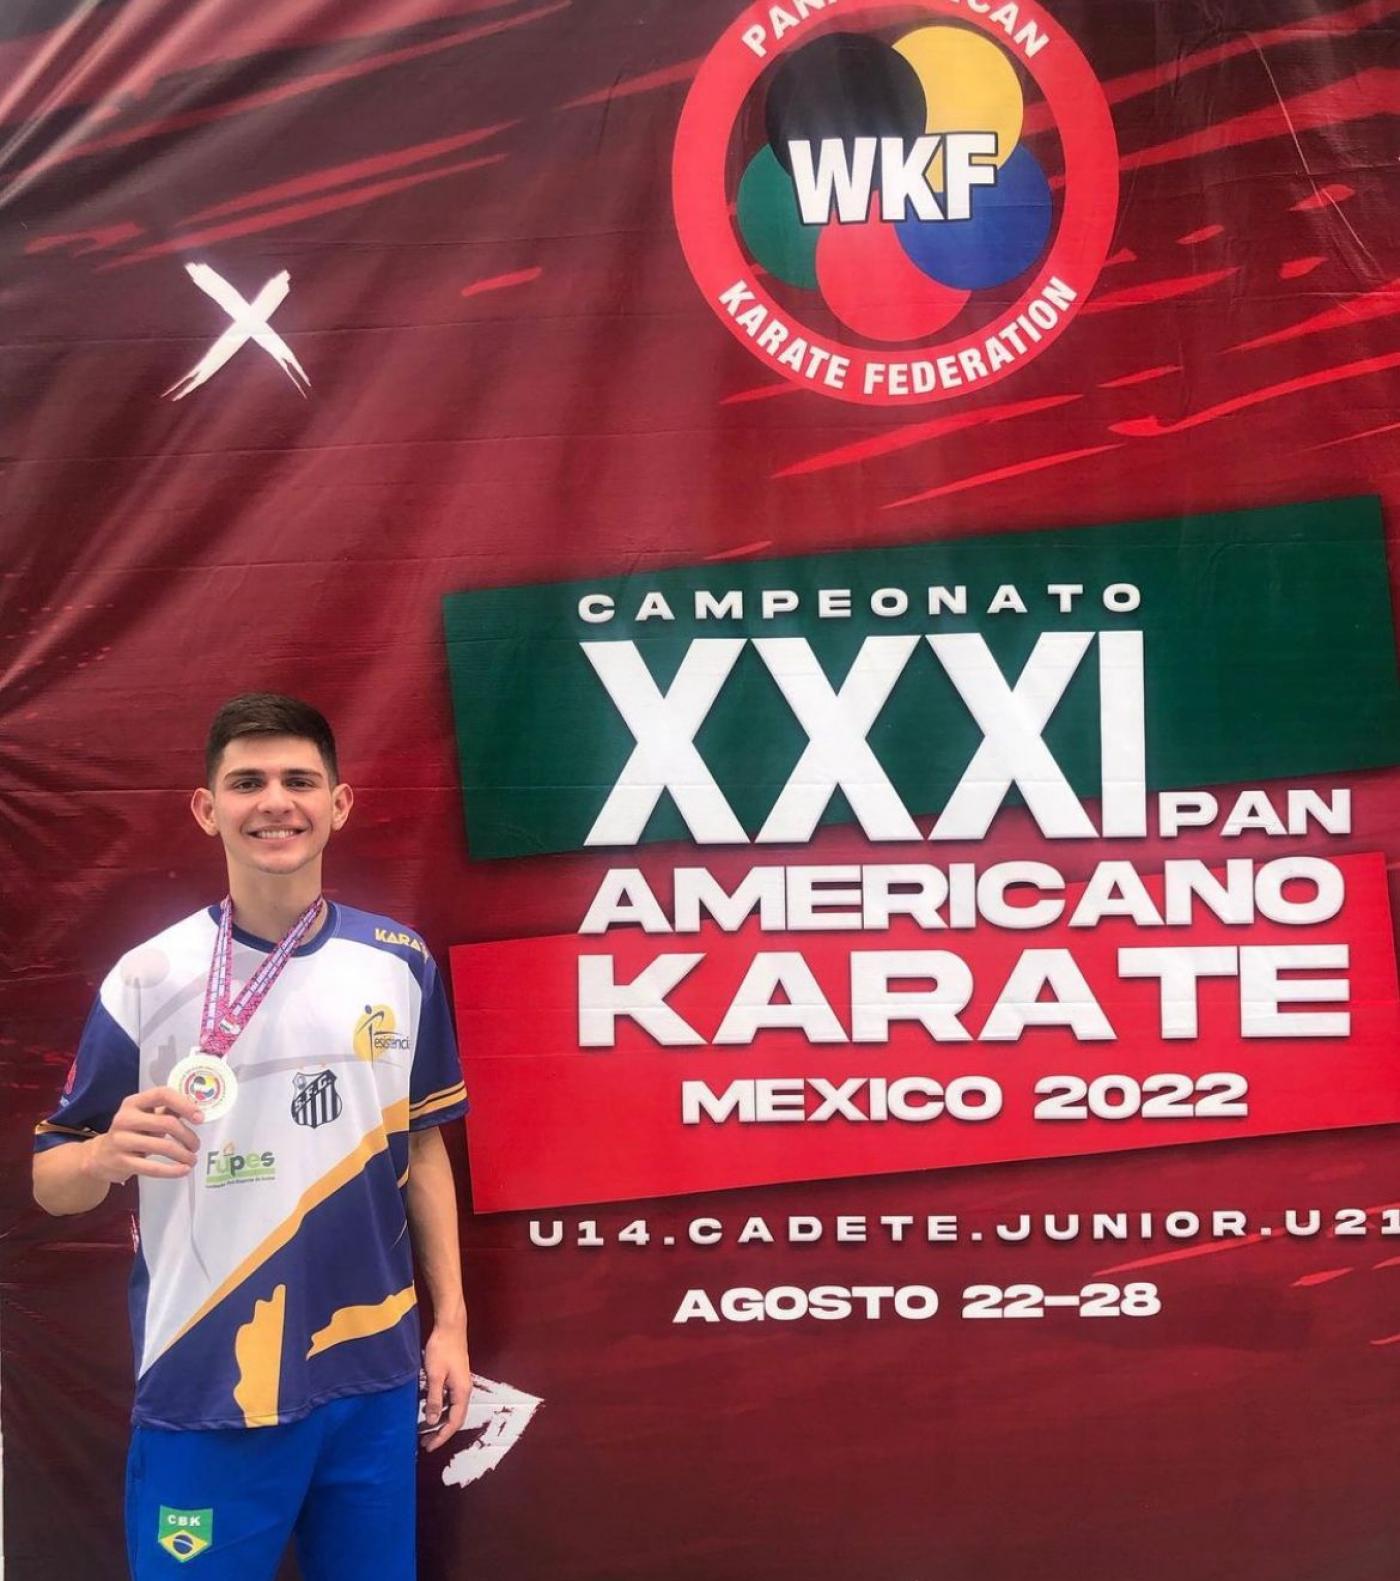 Santos kárateka gana medalla de plata en los Juegos Panamericanos de México